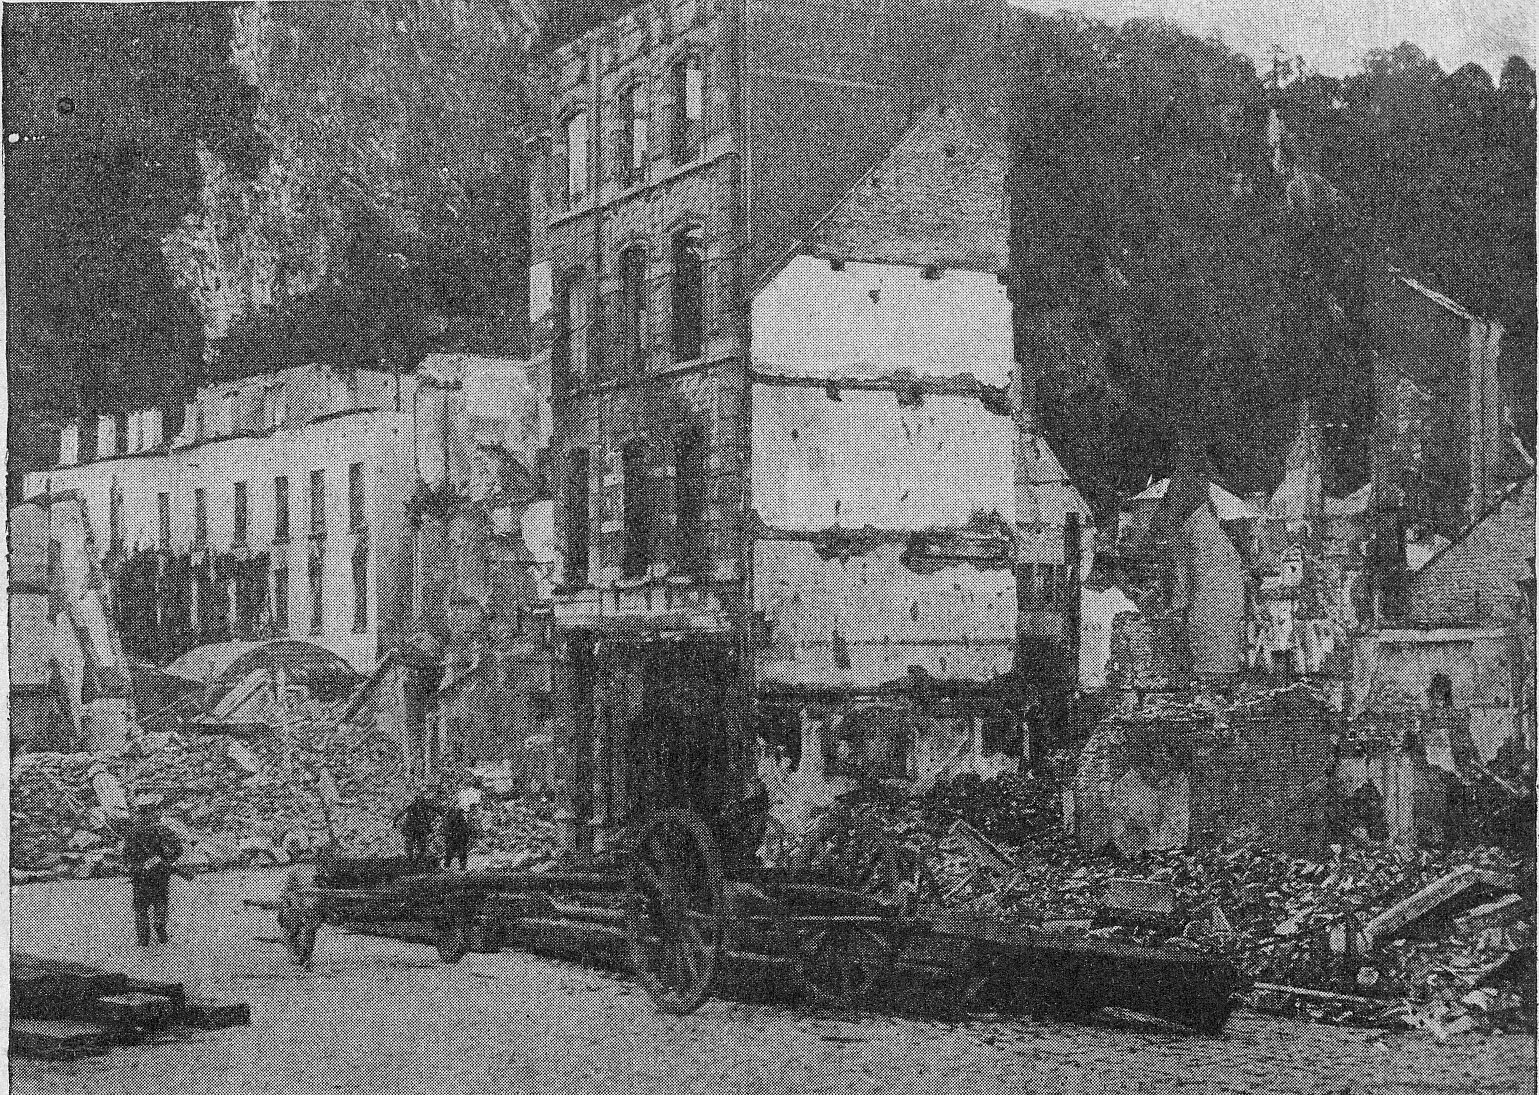  Ruins of Dinant (Belgium) : "Après la destruction Préméditée de Dinant : Une rue en ruines", 1915.  